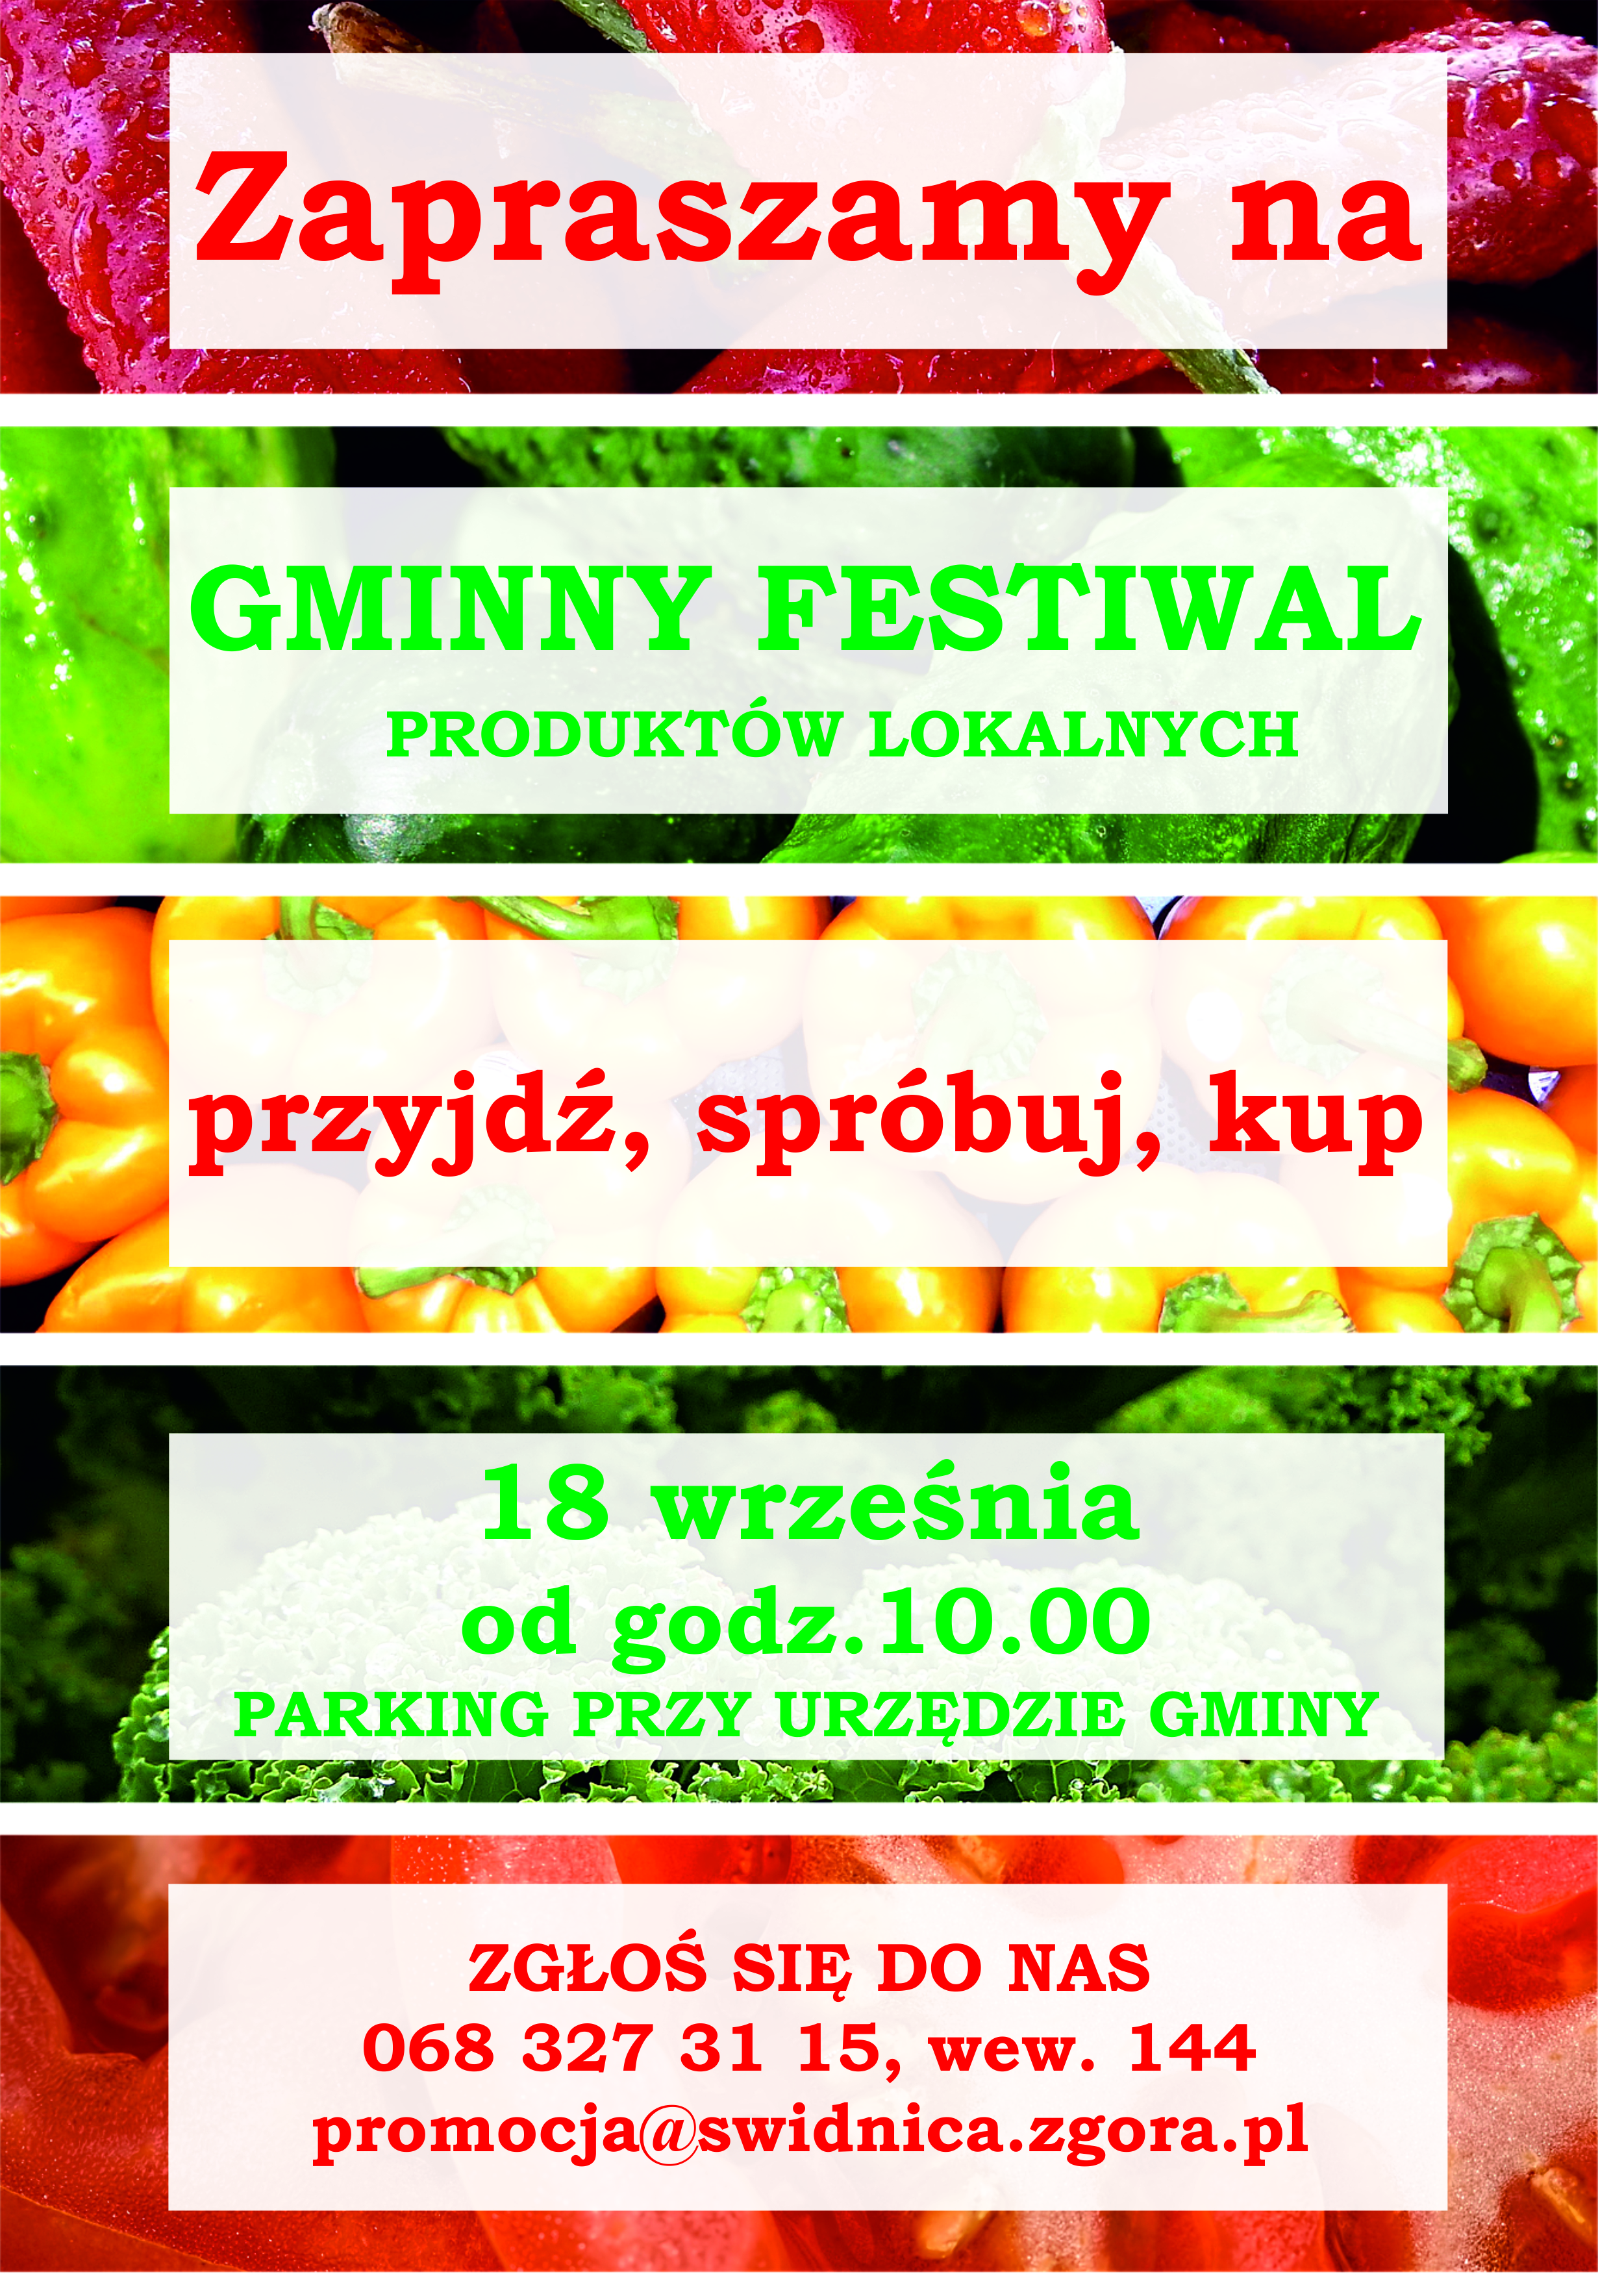 Plakat promujący Gminny festiwal produktów lokalnych